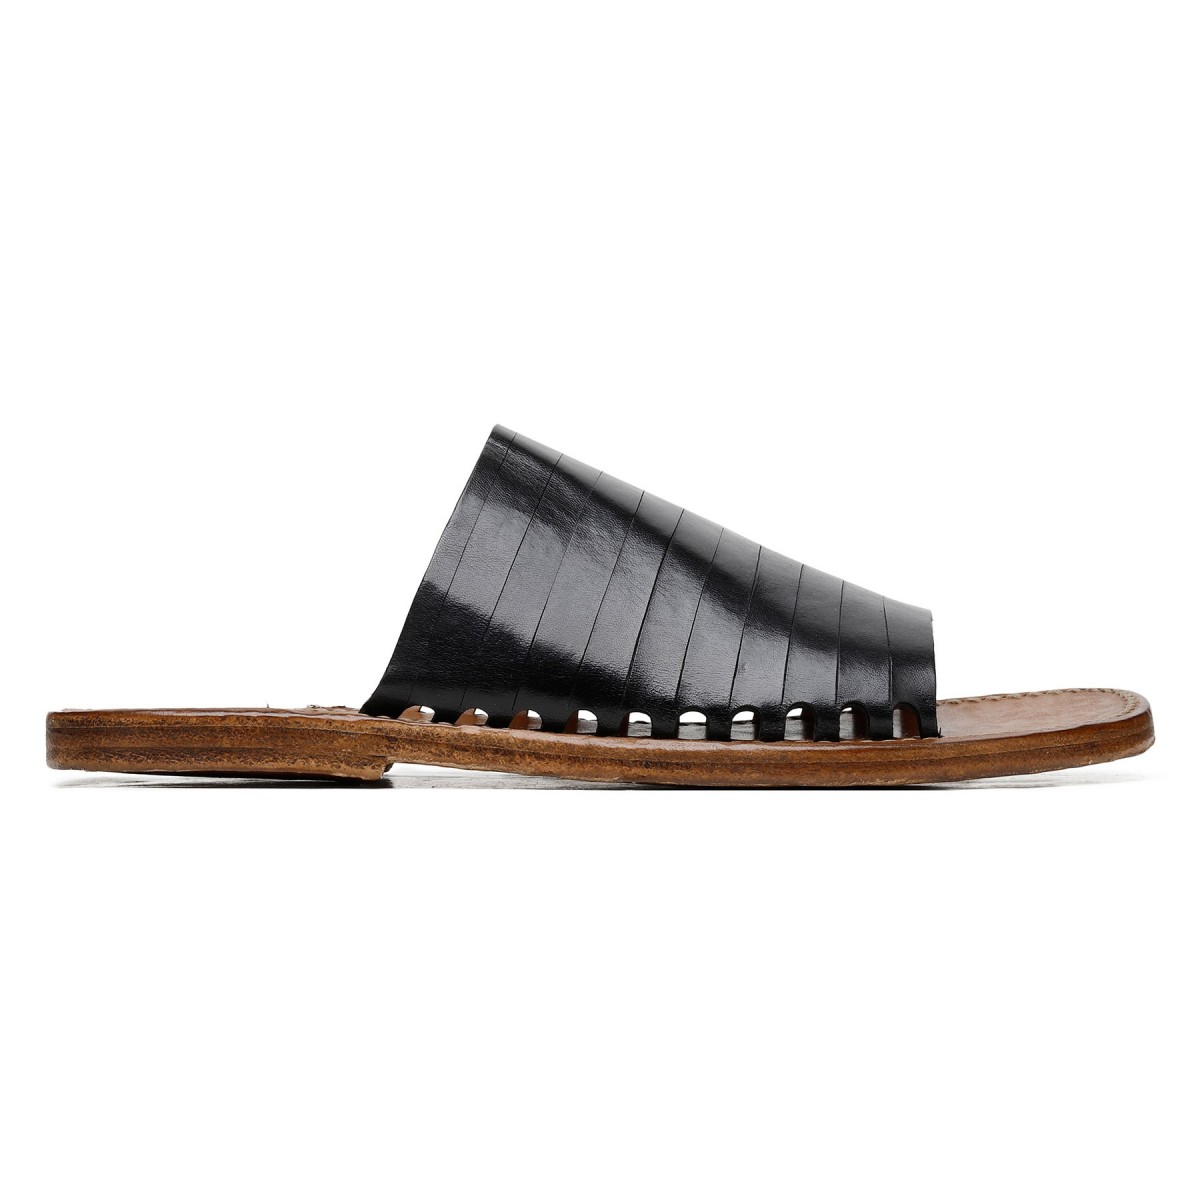 Black leather slide sandals